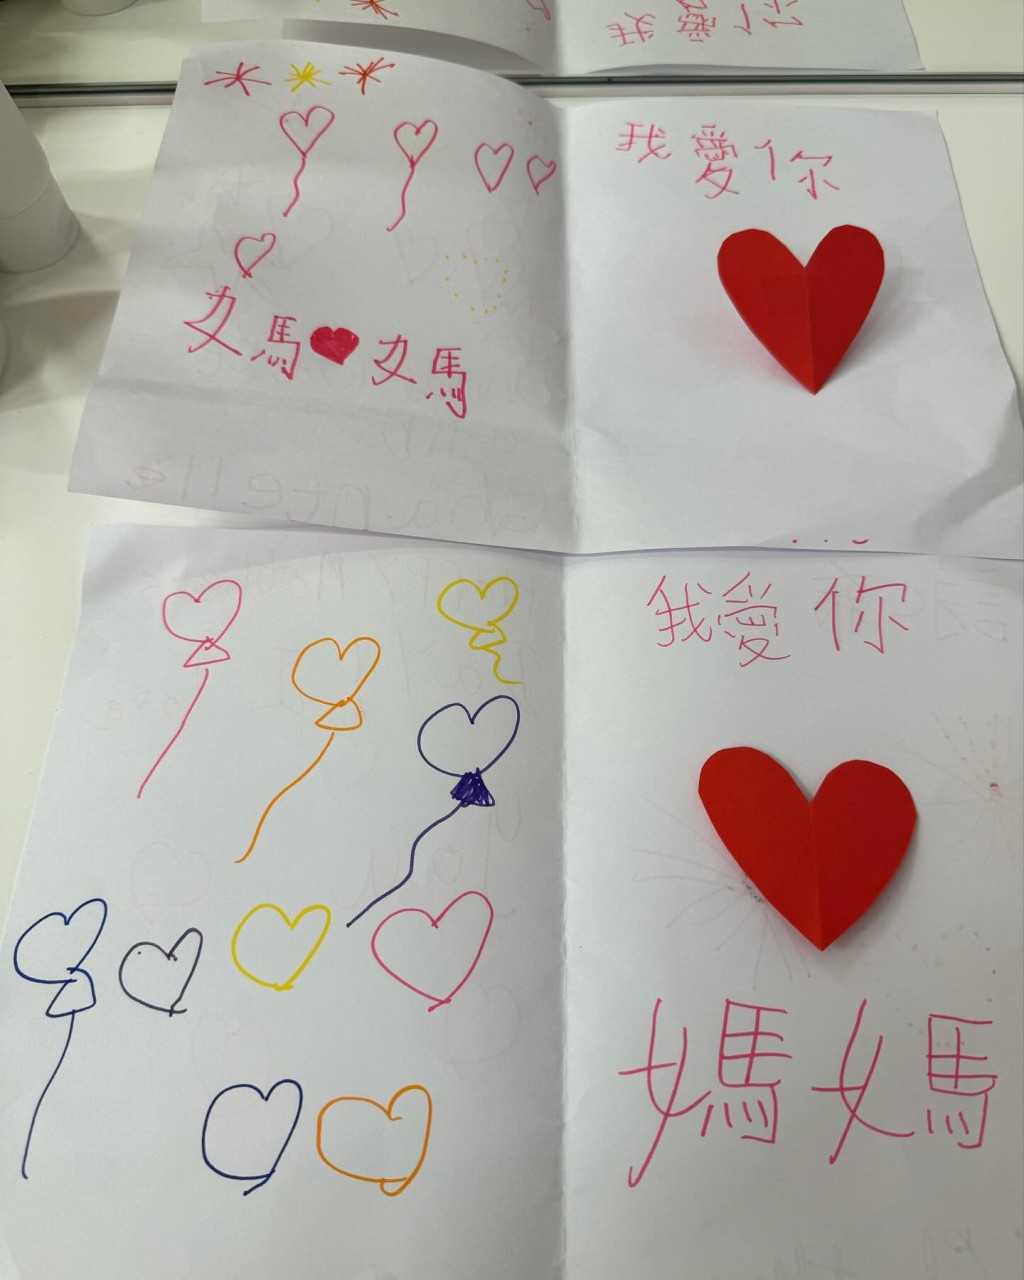 心意卡的内页用上红、橙、黄及蓝色画上烟花及气球，并在右边贴上心心，并再写上「我爱你 妈妈」字体简洁整齐。